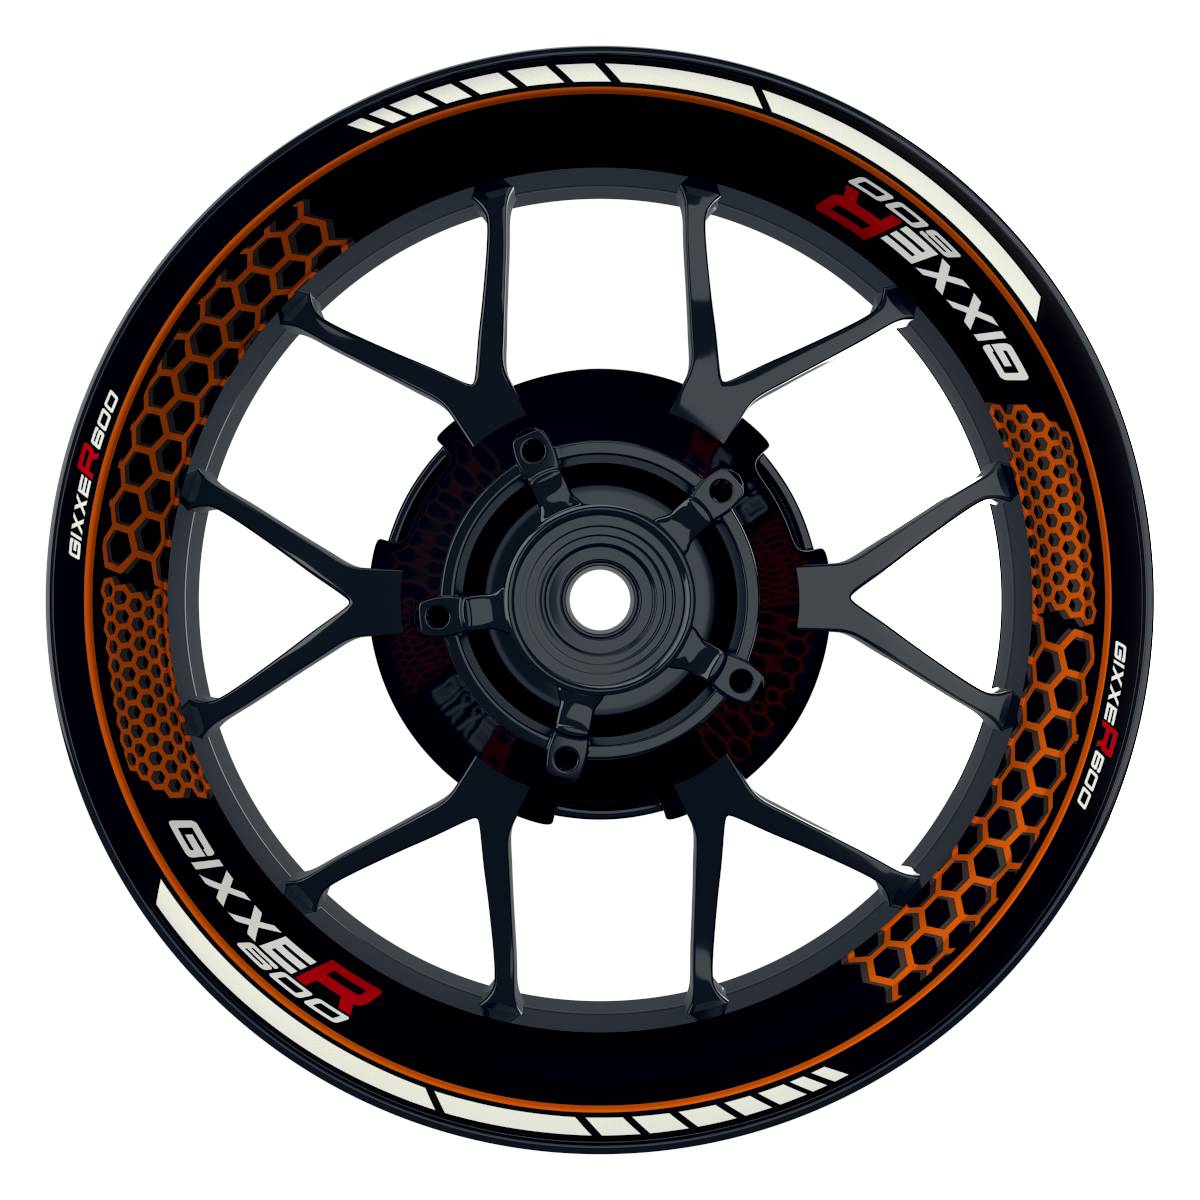 GIXXER600 Hexagon schwarz orange Wheelsticker Felgenaufkleber